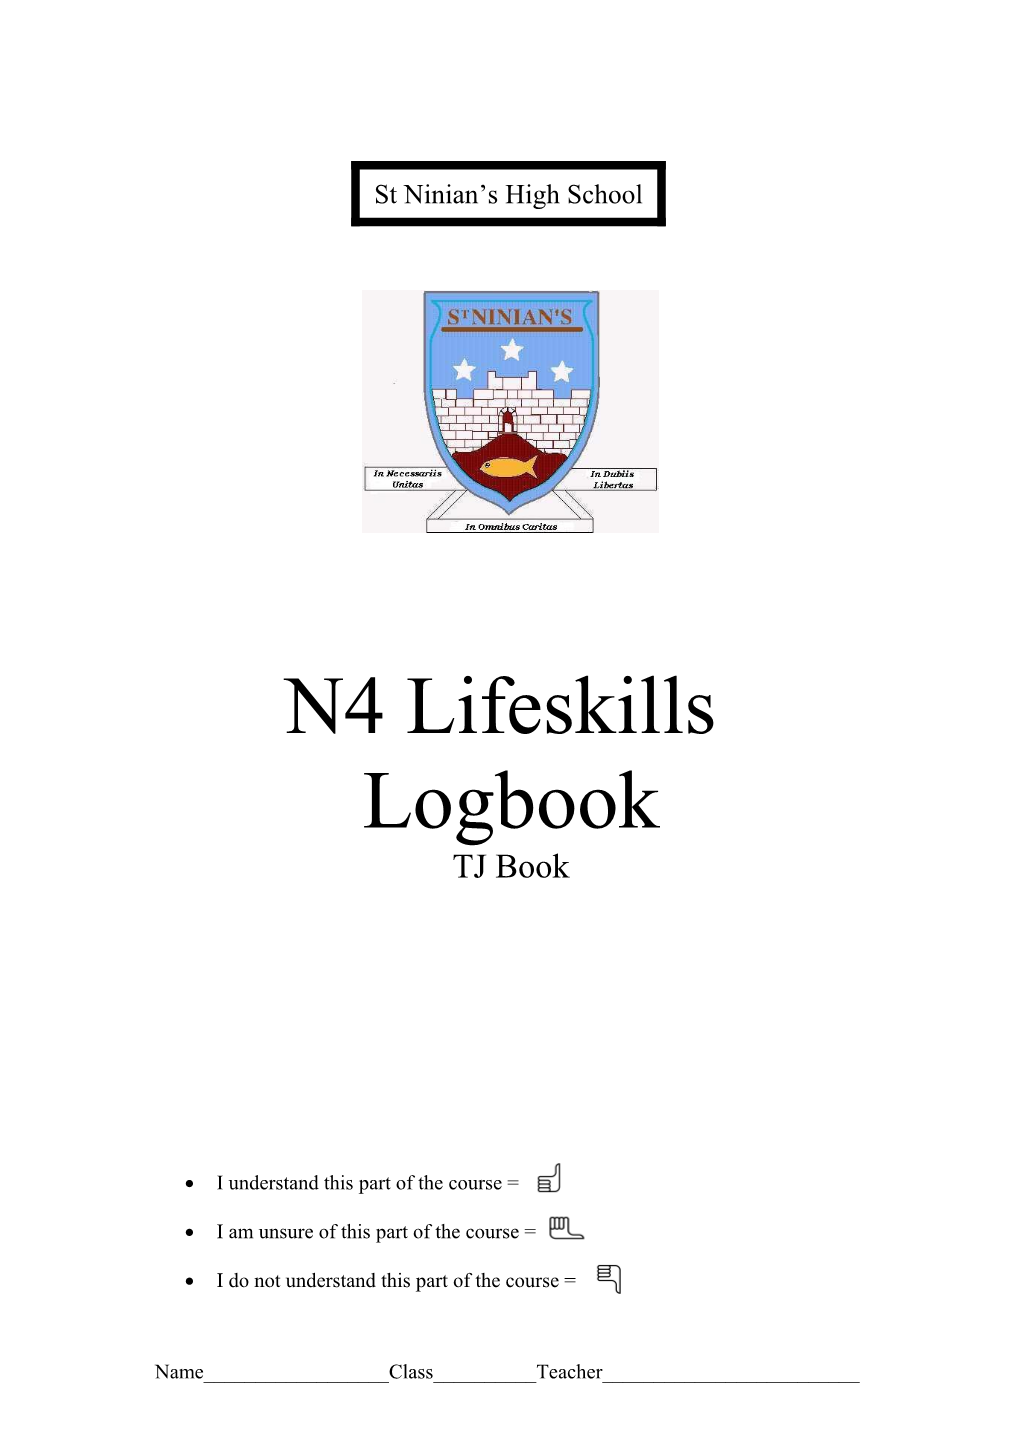 N4 Lifeskills Logbook